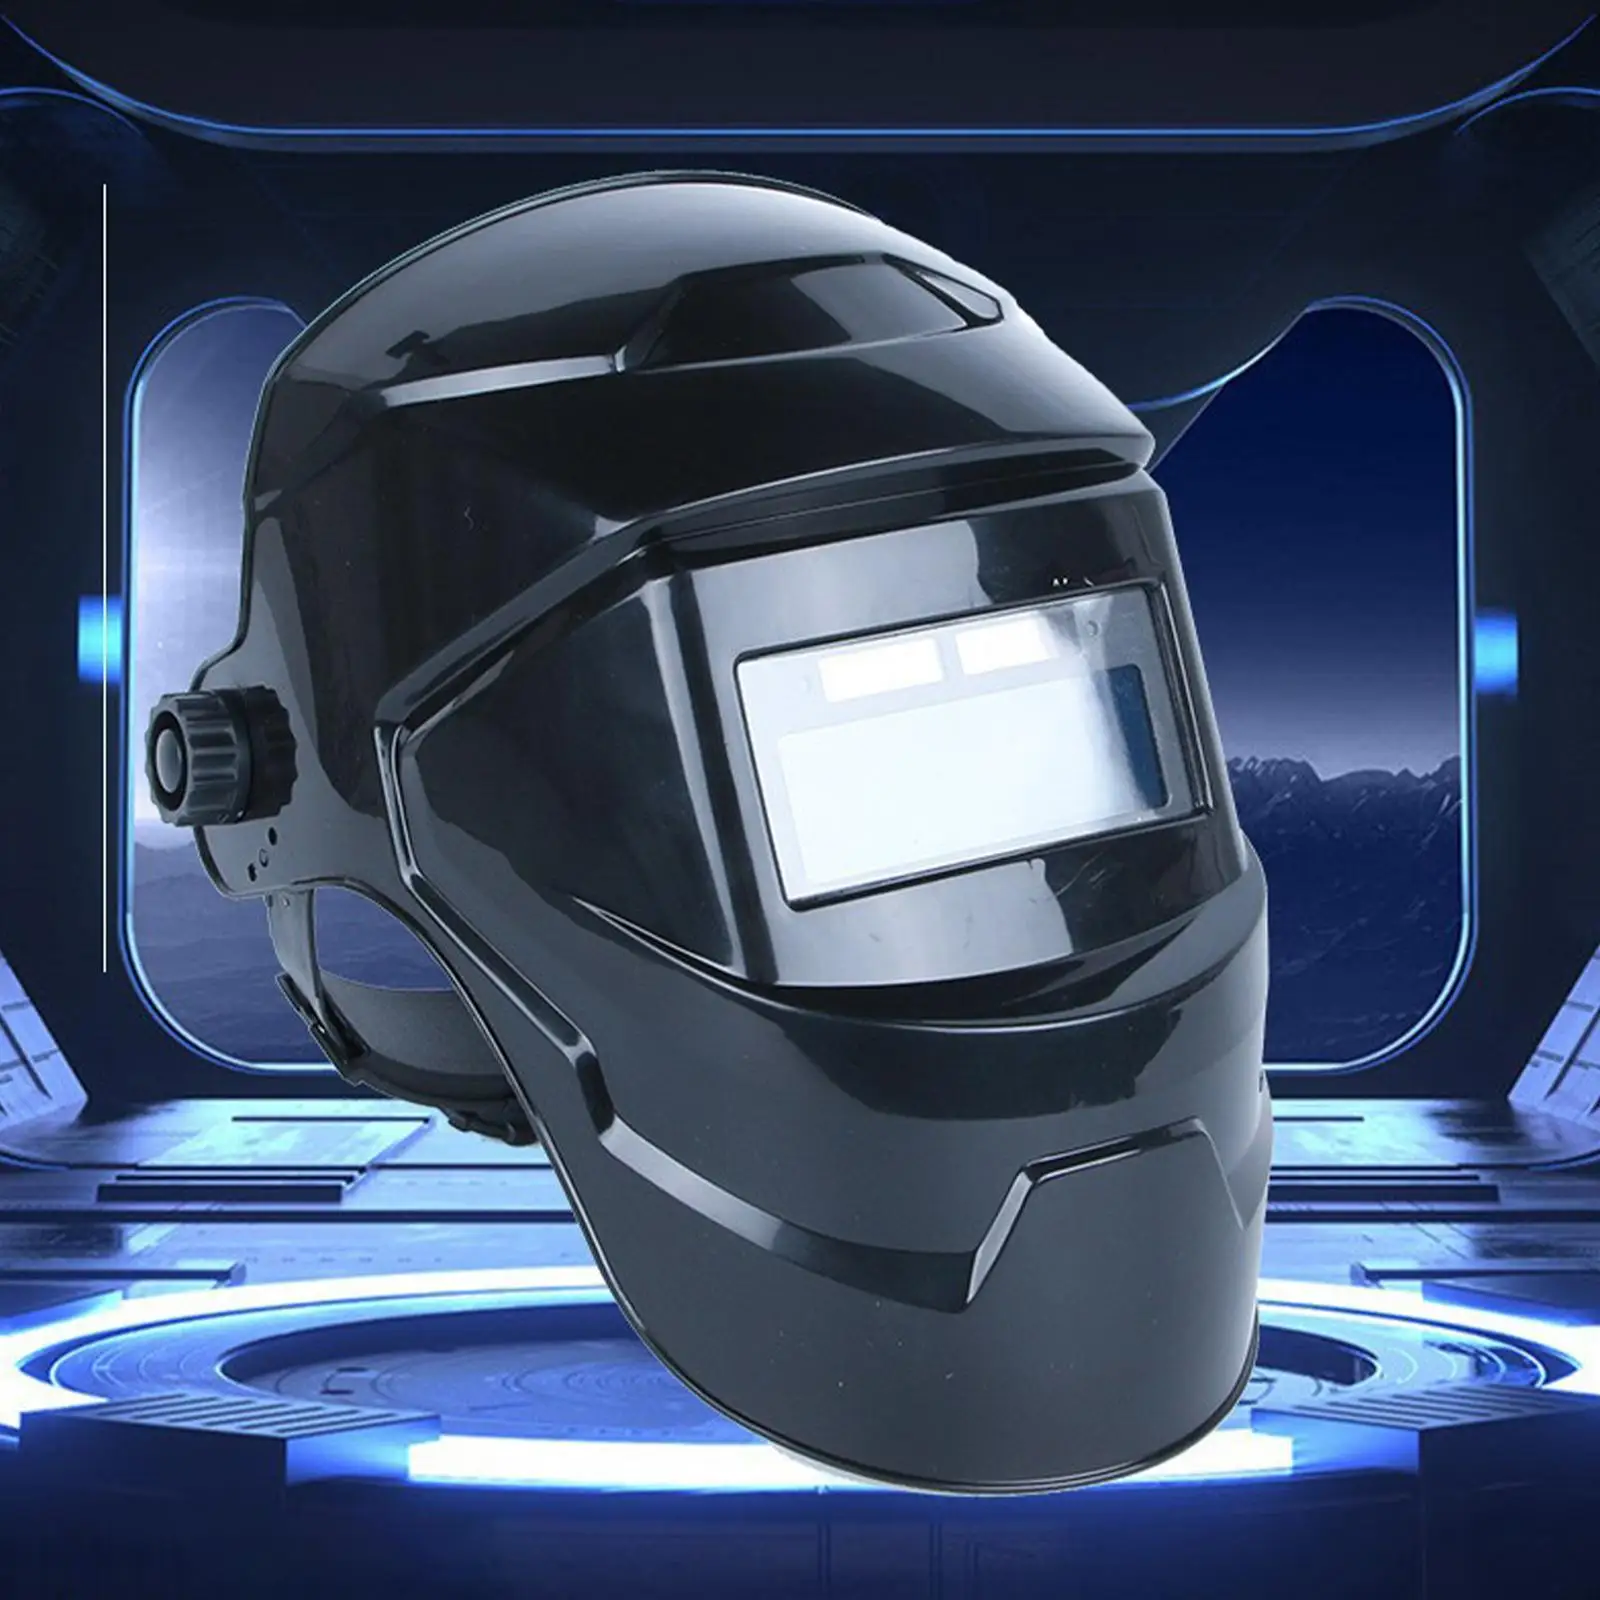 Auto Darkening Welding Helmet Head Mounted 180 Free Rotation Adjustable Welding Helmet Welder Mask for All Welding Applications